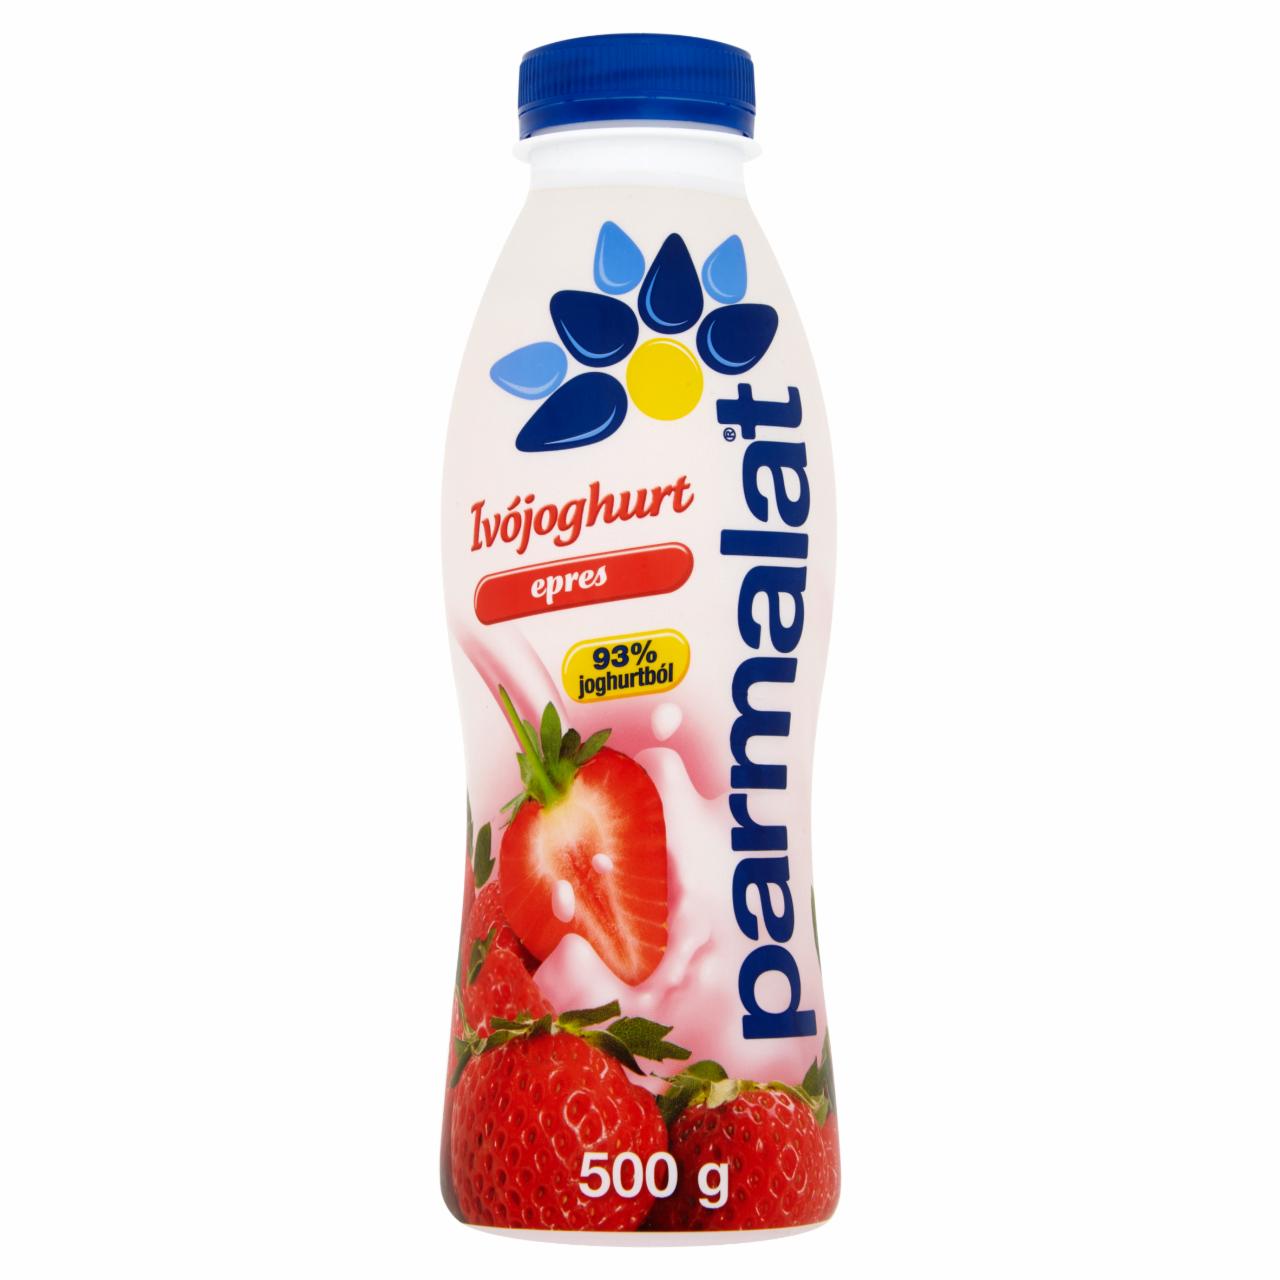 Képek - Parmalat epres ivójoghurt 500 g